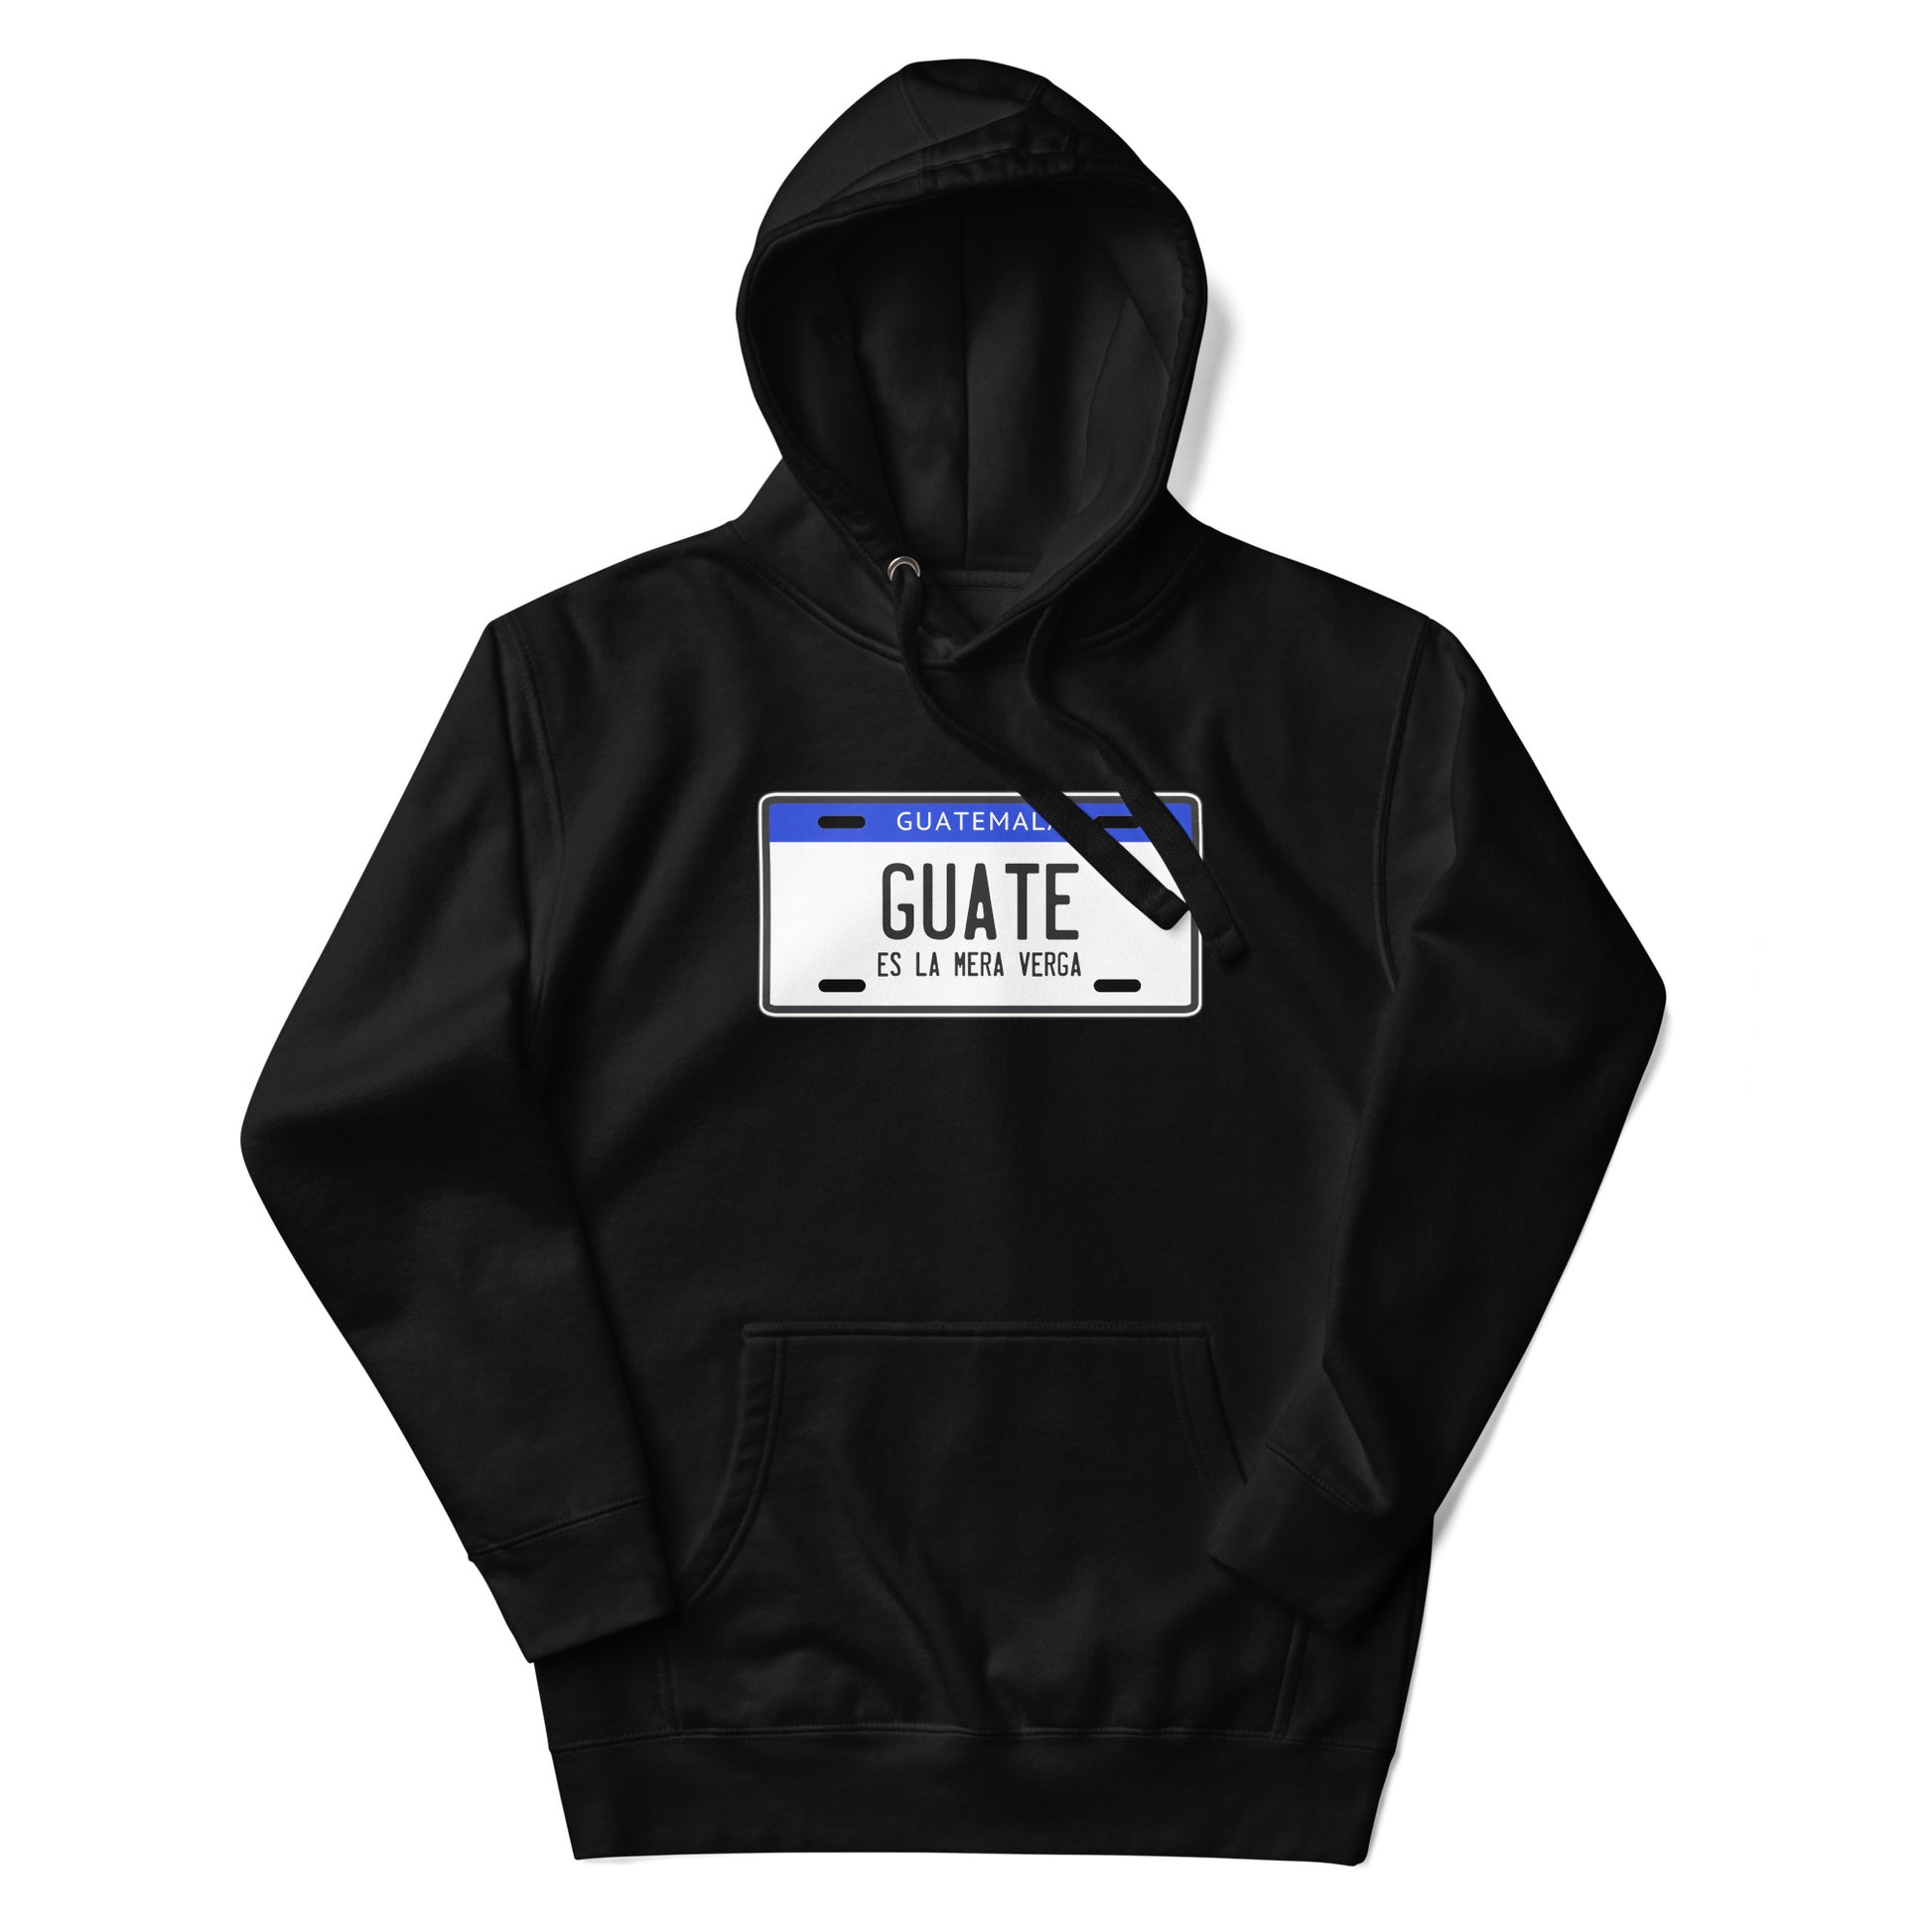 Hoodie Guate es la V... ,Descubre calidad excepcional y estampados duraderos. Encuentra estilo y orgullo en cada prenda. Compra ahora!a